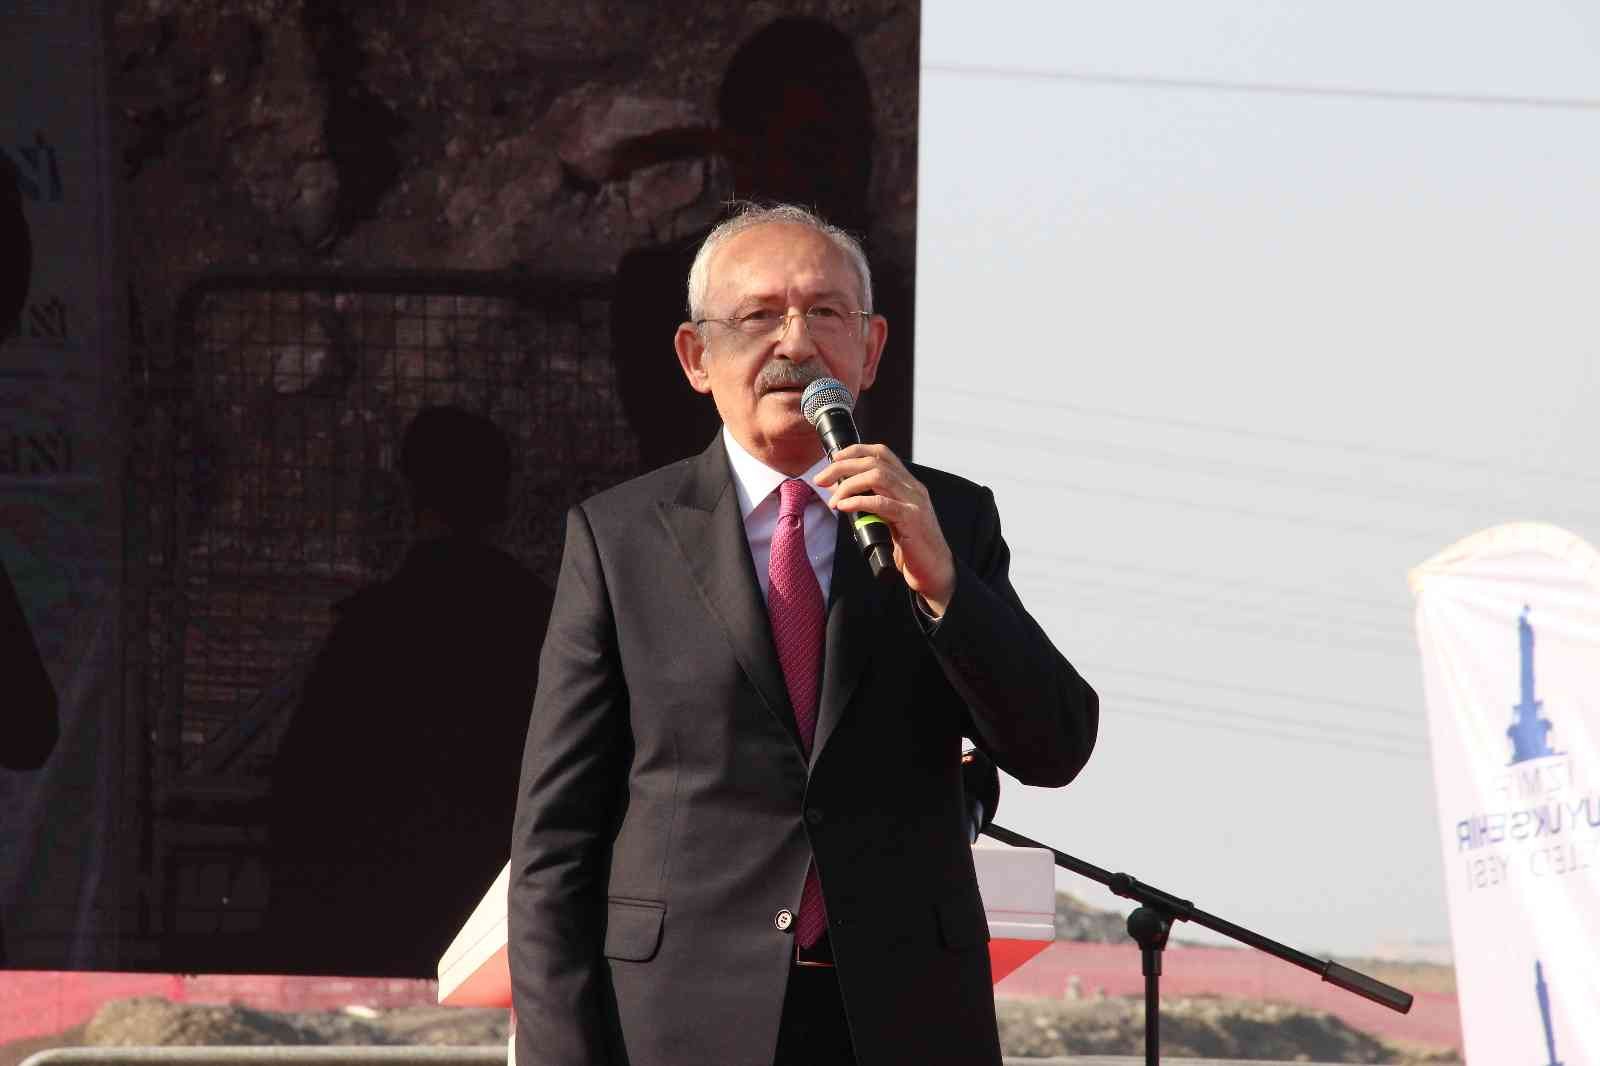 Kılıçdaroğlu’ndan belediye başkanlarına: “Arka mahallelere pozitif ayrımcılık yapacaksınız”